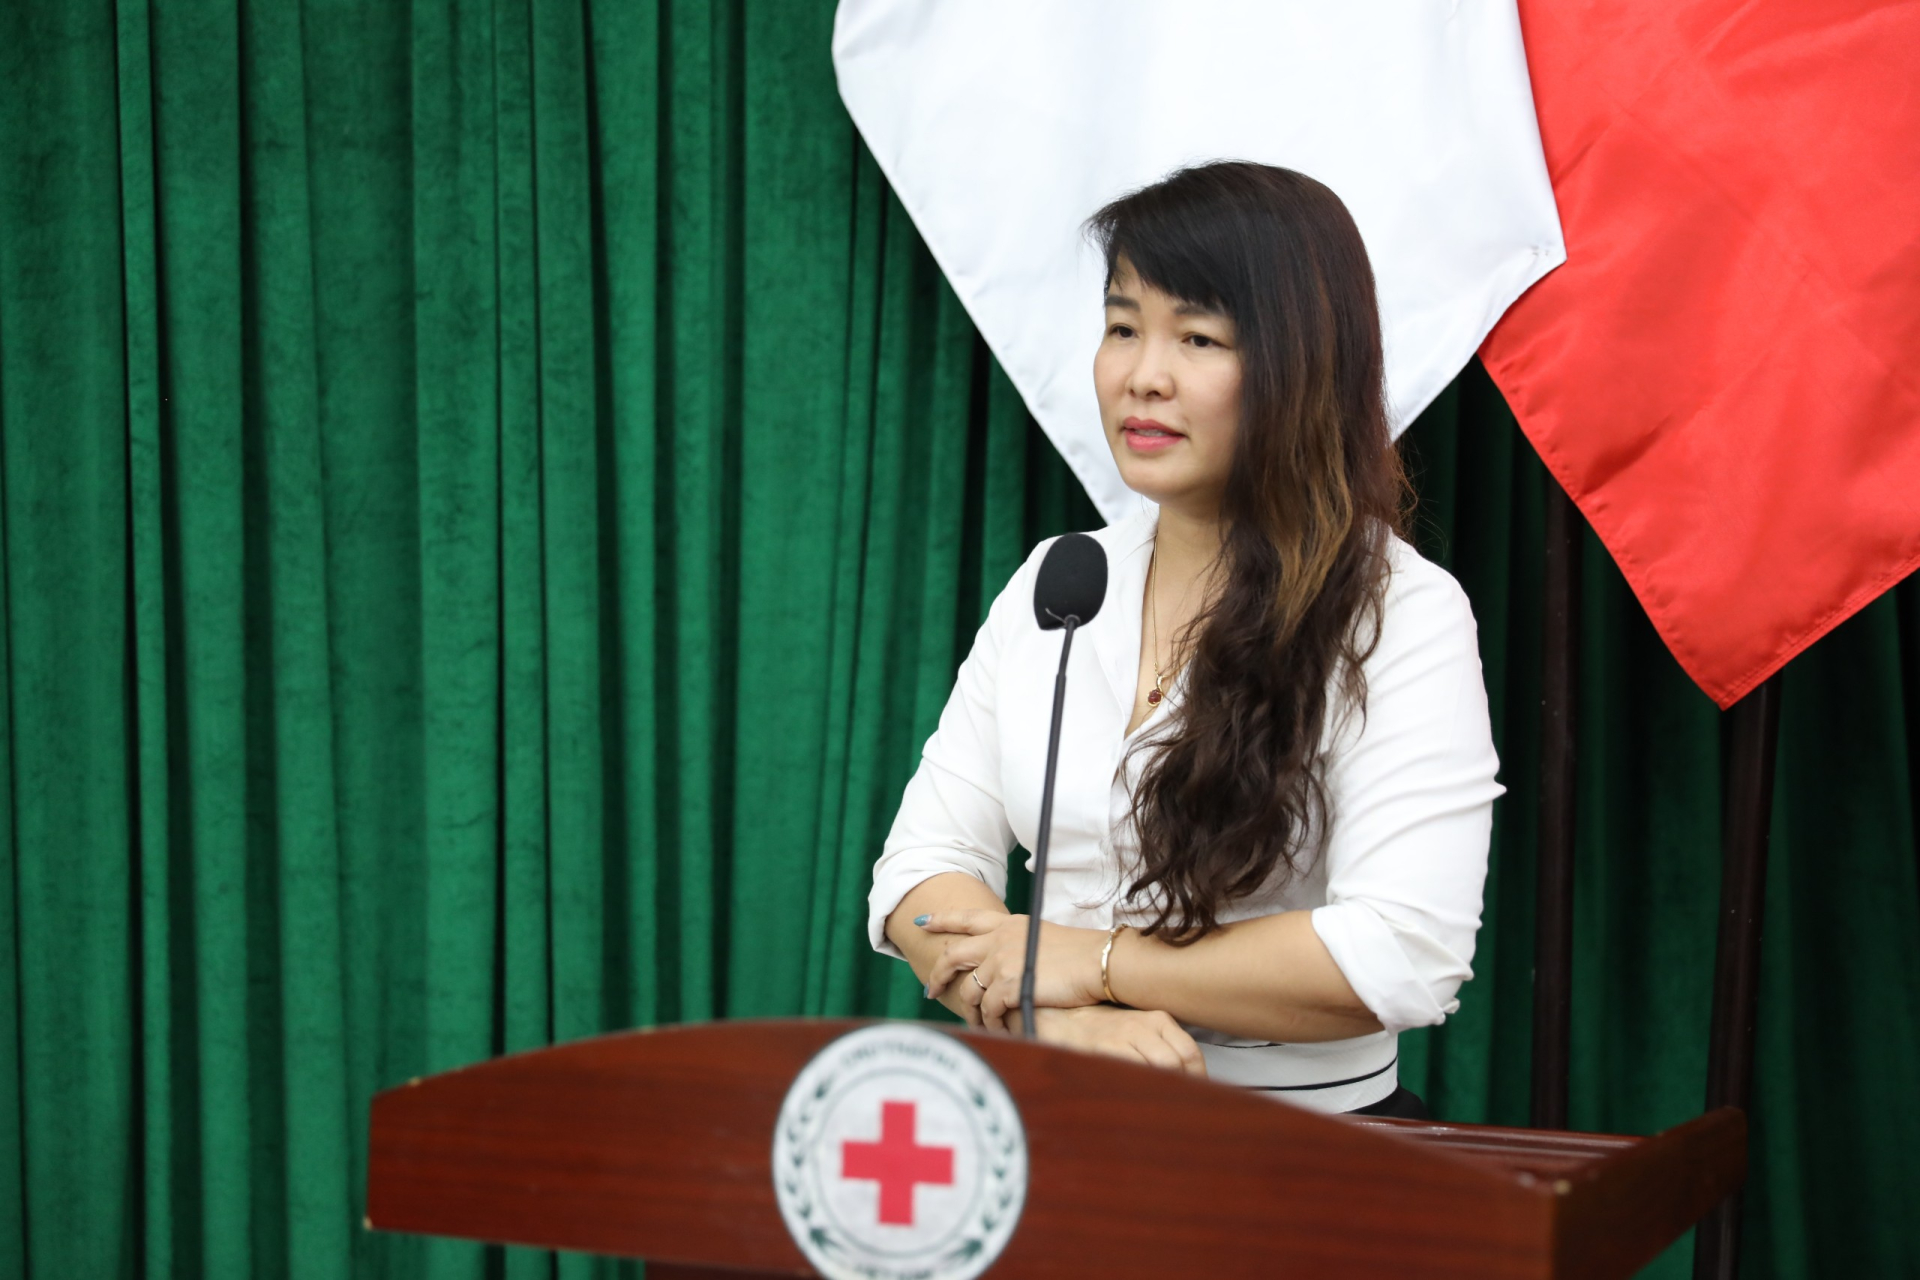 Bà Đỗ Thị Hoà, Phó Giám đốc Trung tâm truyền thông, phụ trách Cổng thông tin nhân đạo quốc gia 1400 phát biểu tại buổi lễ.